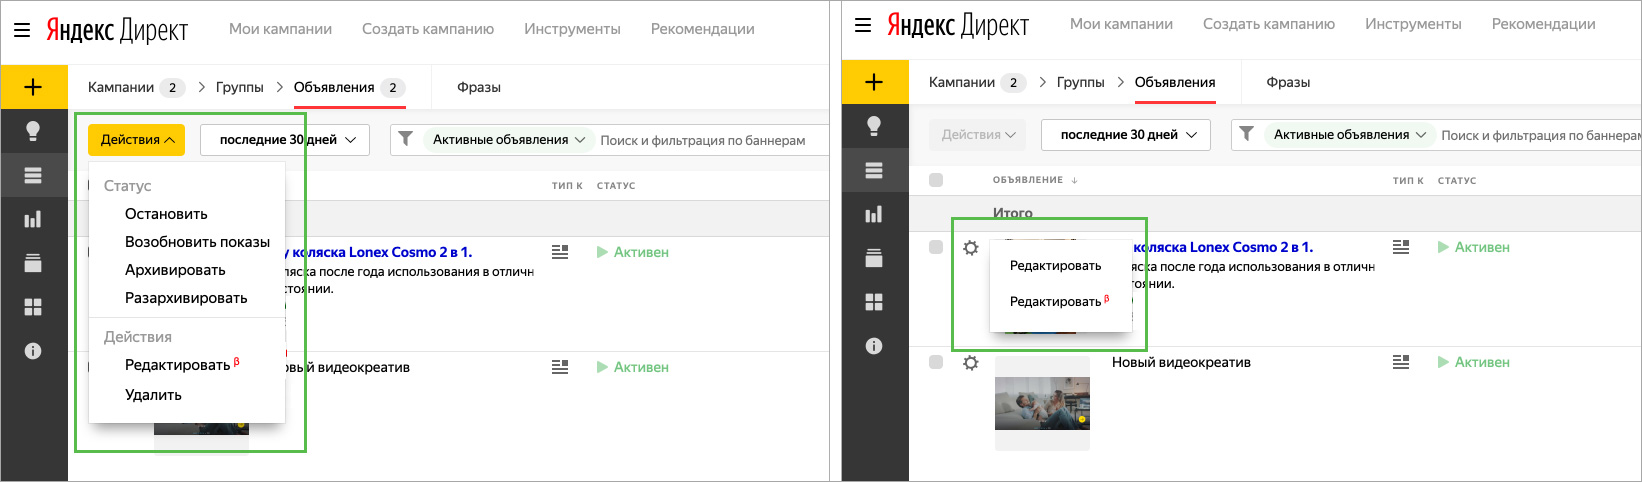 Яндекс представил 3 обновления для Директа